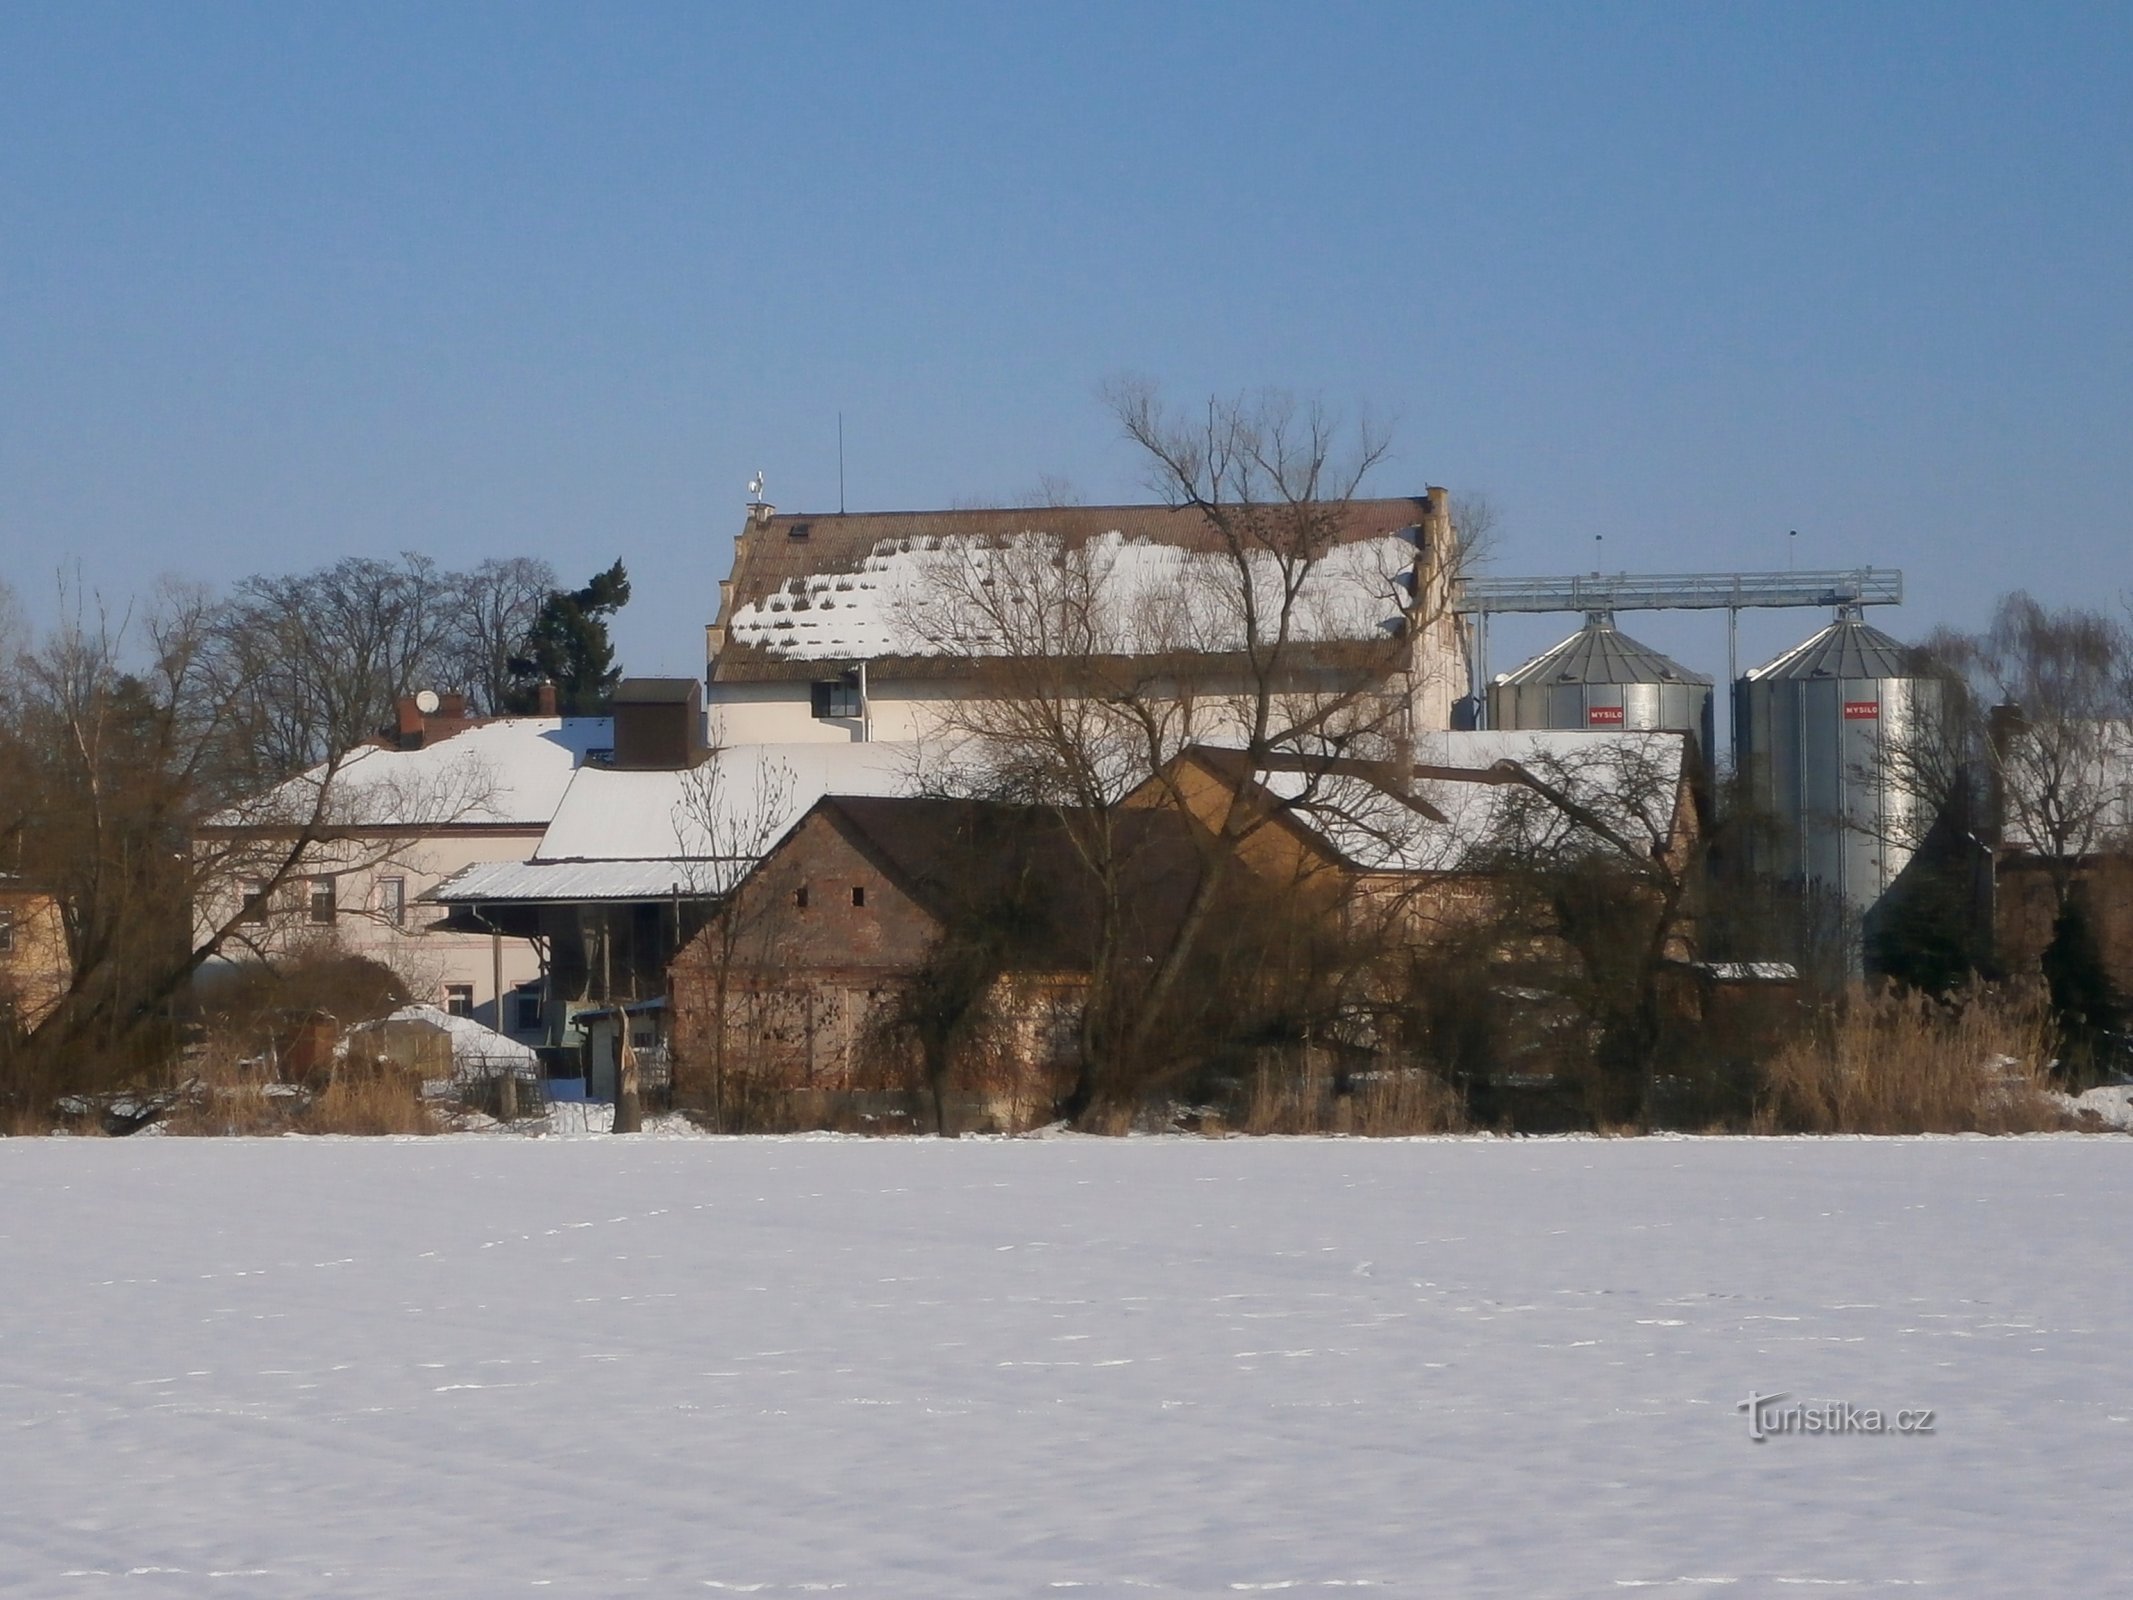 Nhà máy Kydlinov trước đây (Hradec Králové)